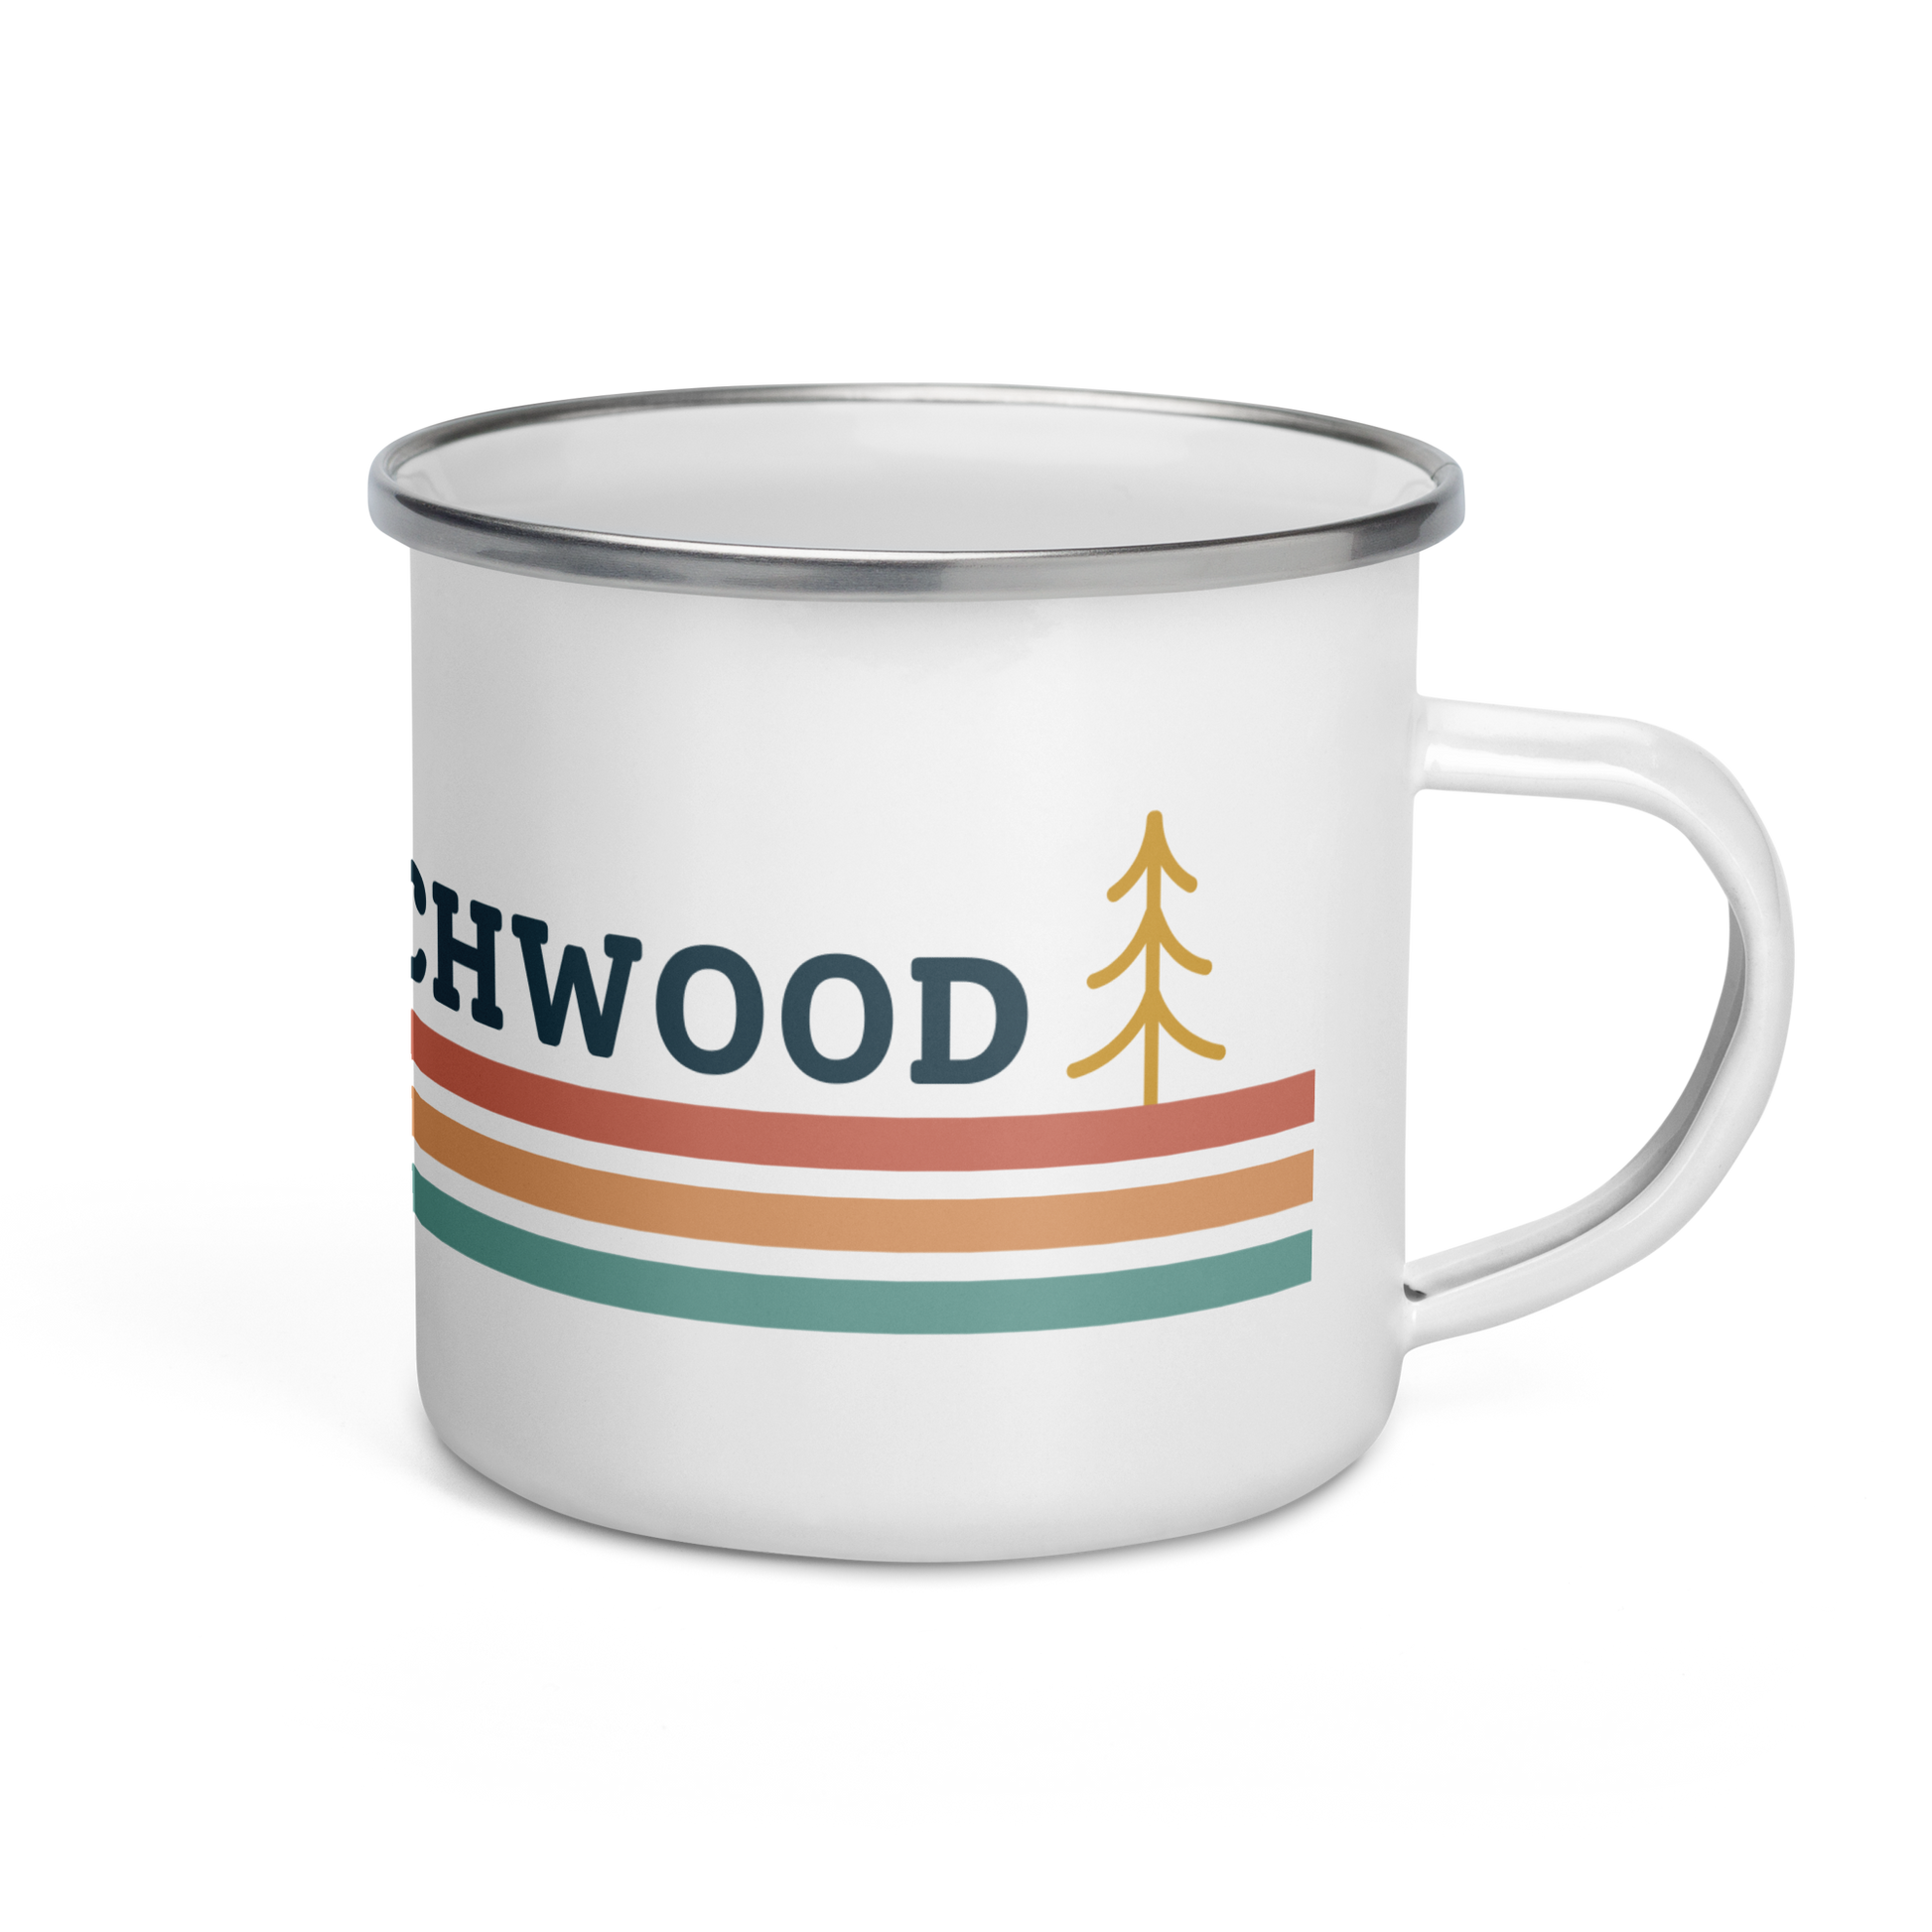 Camp Stitchwood Enamel Mug